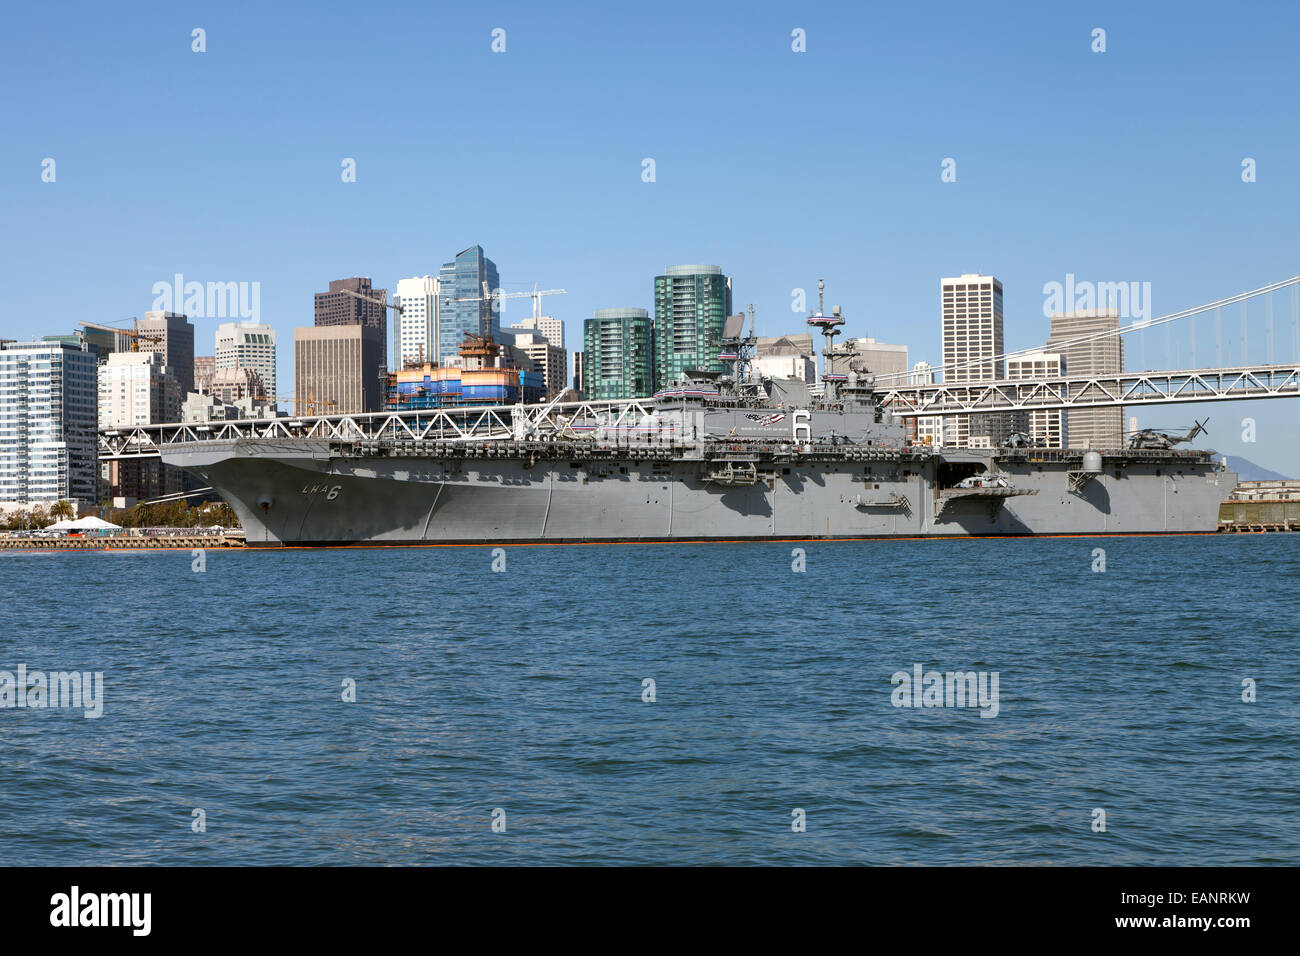 USS America (LHA 6) amarré le long du front de mer de San Francisco le 11 octobre 2014, le jour de sa mise en service. Banque D'Images